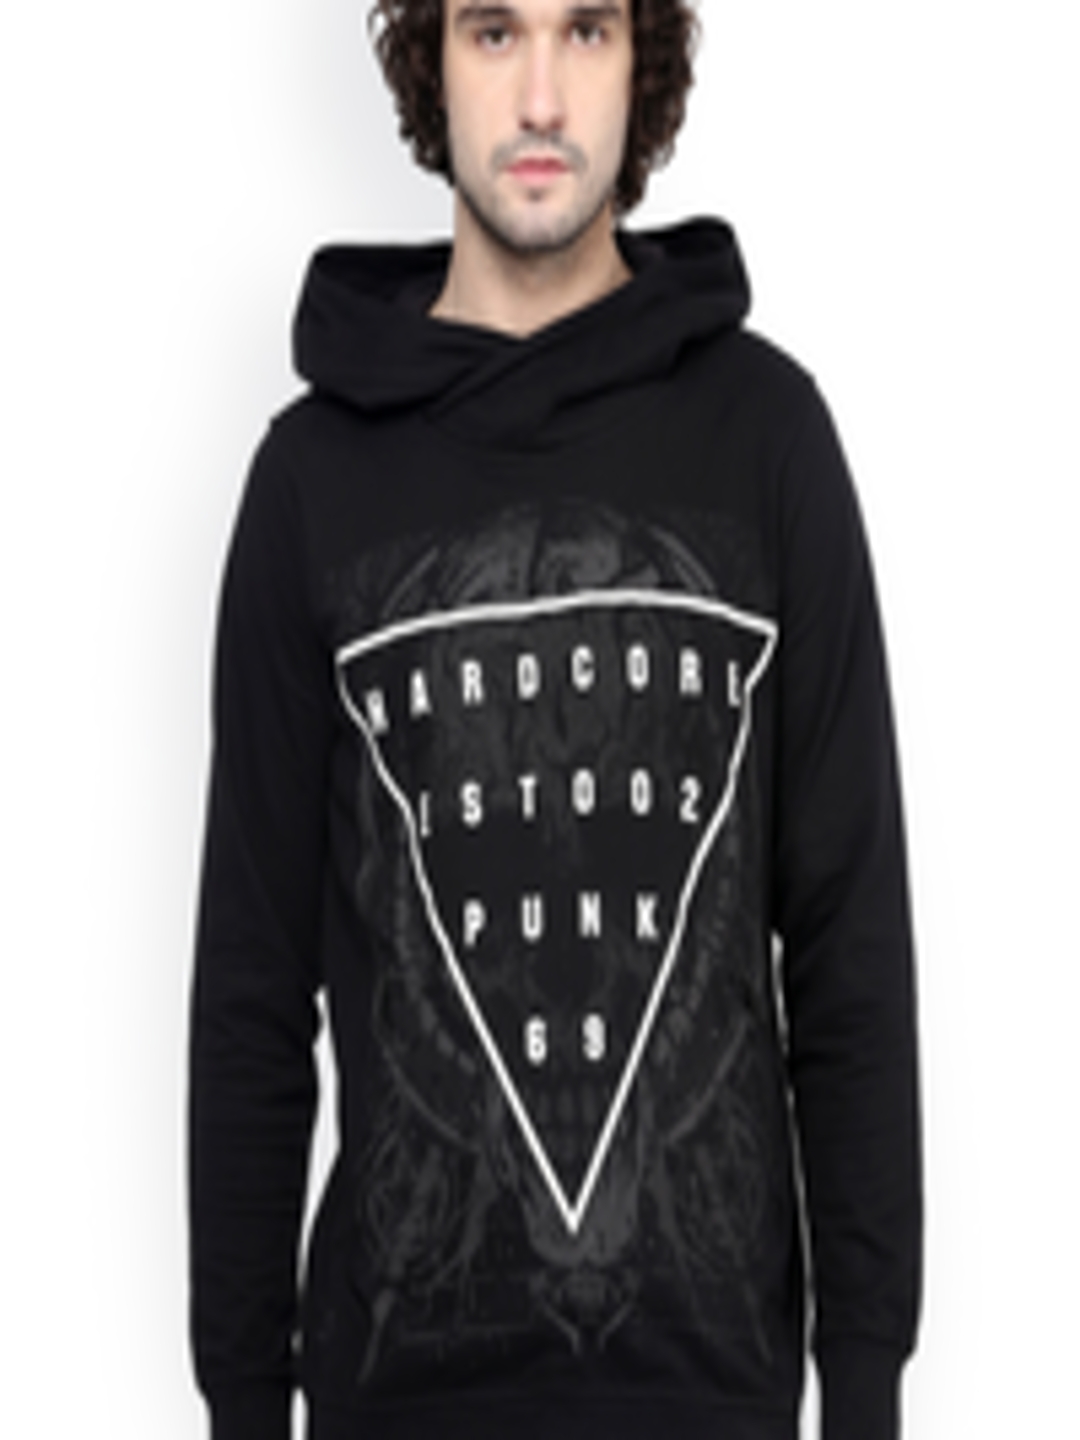 Buy PUNK Black Printed Hooded Sweatshirt - Sweatshirts for Men 1694291